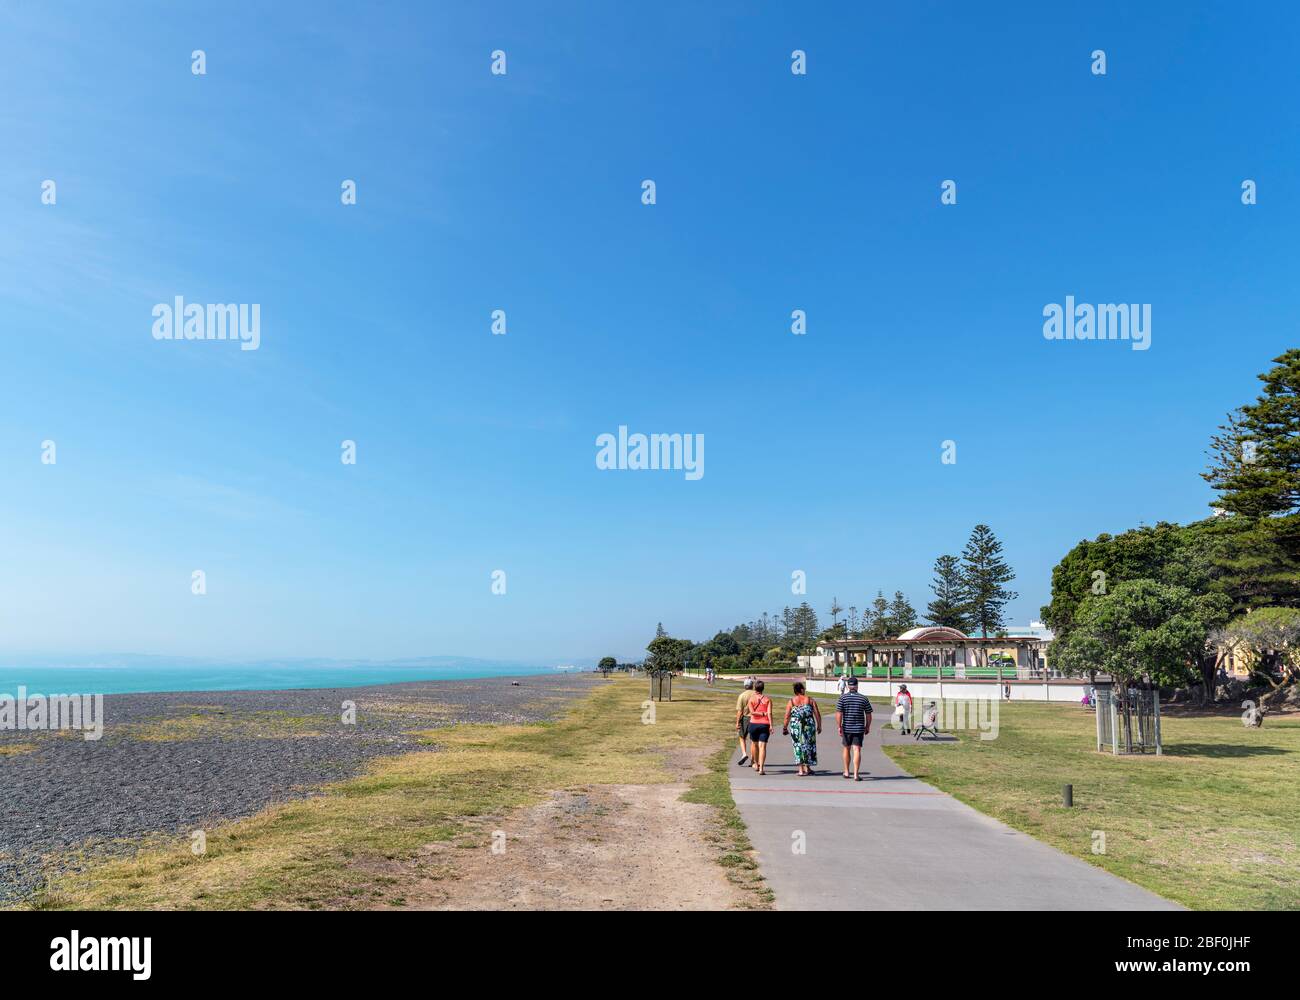 Promenade and beach along Marine Parade, Napier, North Island, New Zealand Stock Photo